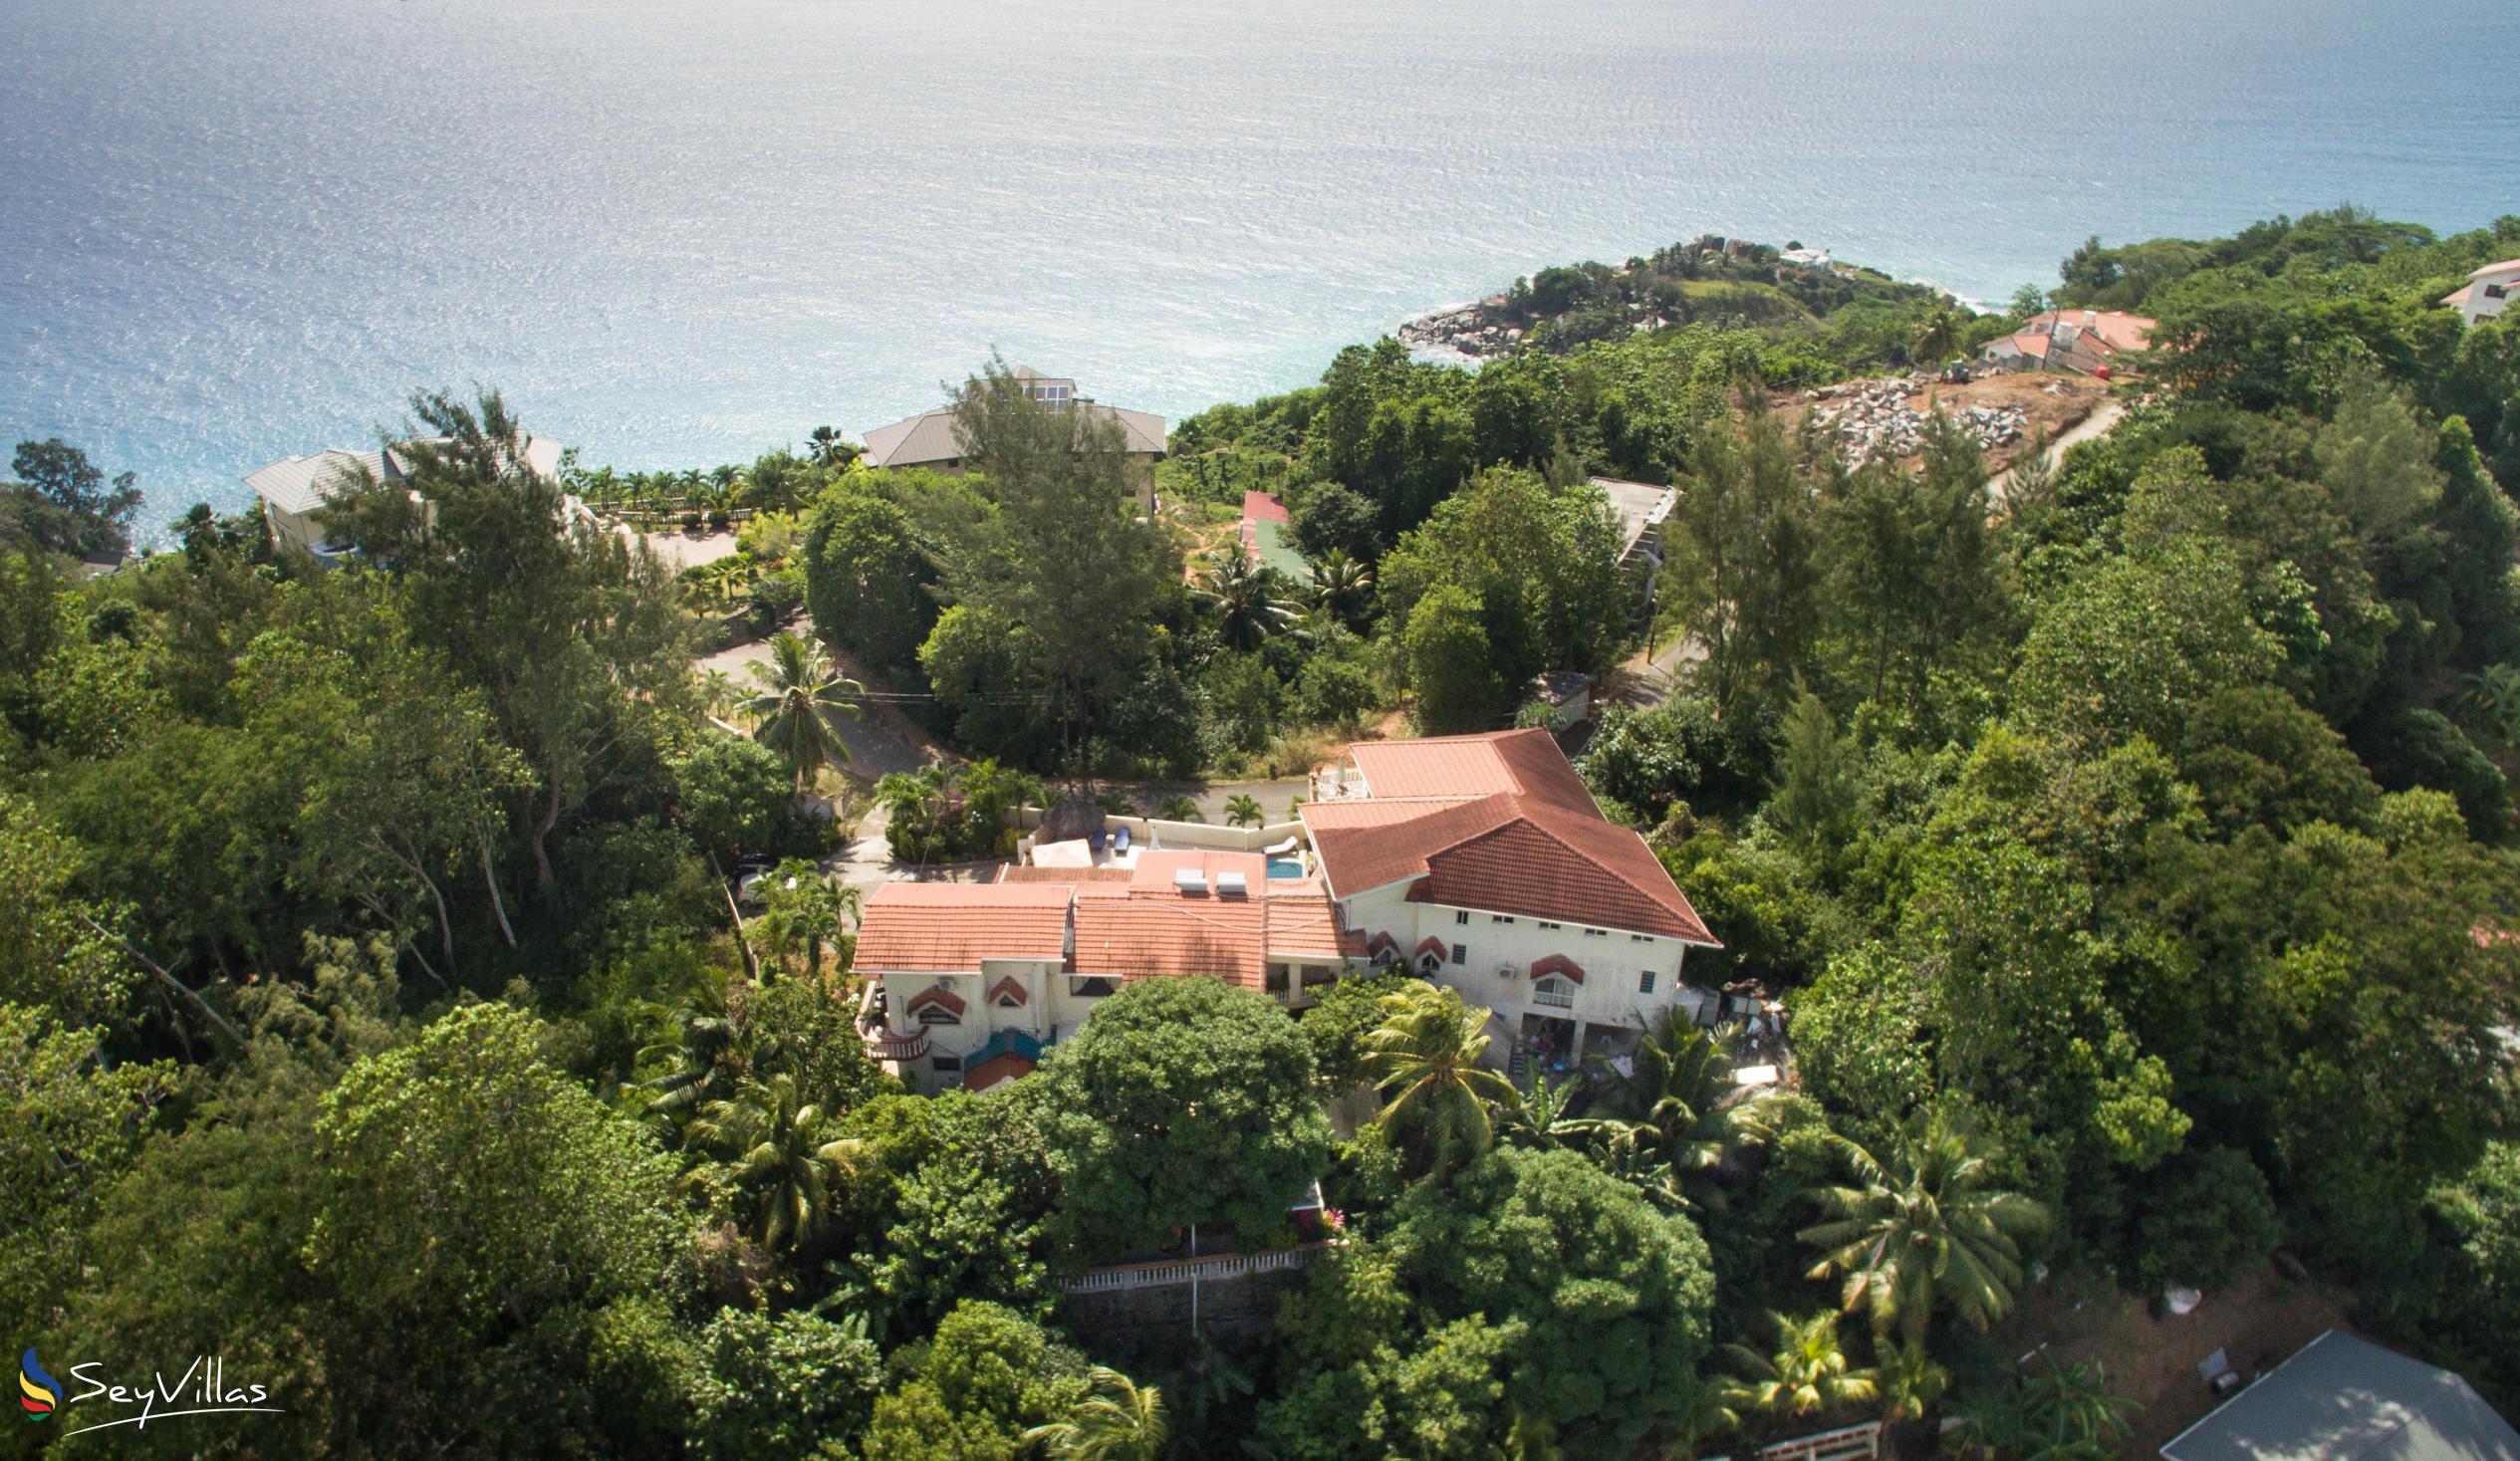 Foto 4: Carana Hilltop Villa - Aussenbereich - Mahé (Seychellen)